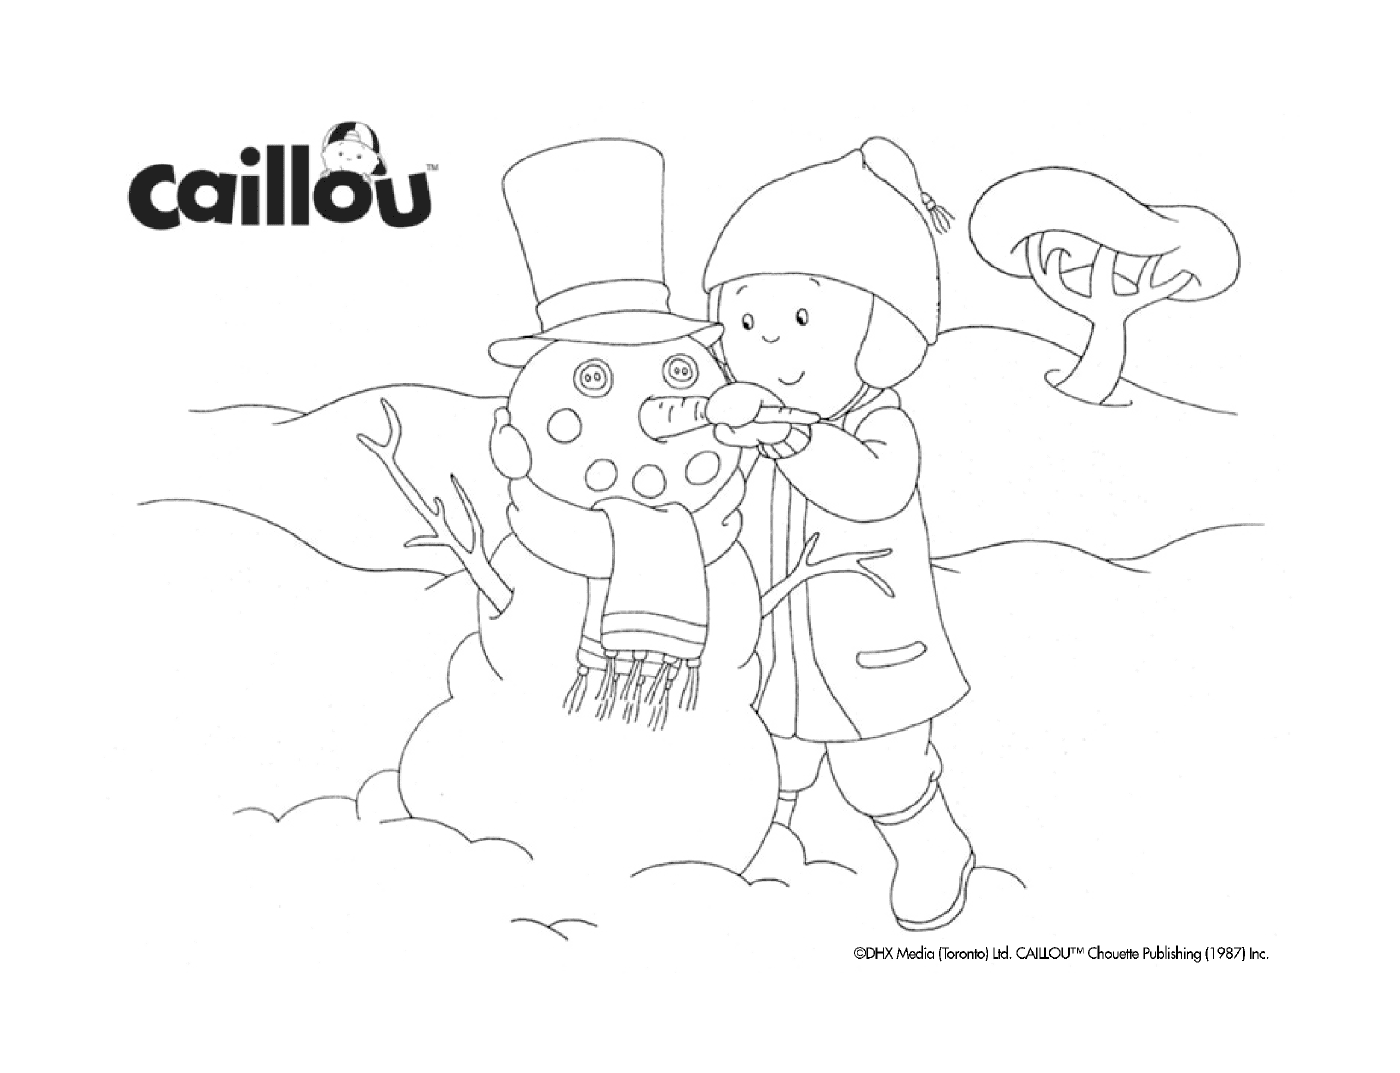  Construção de um boneco de neve por Caillou 